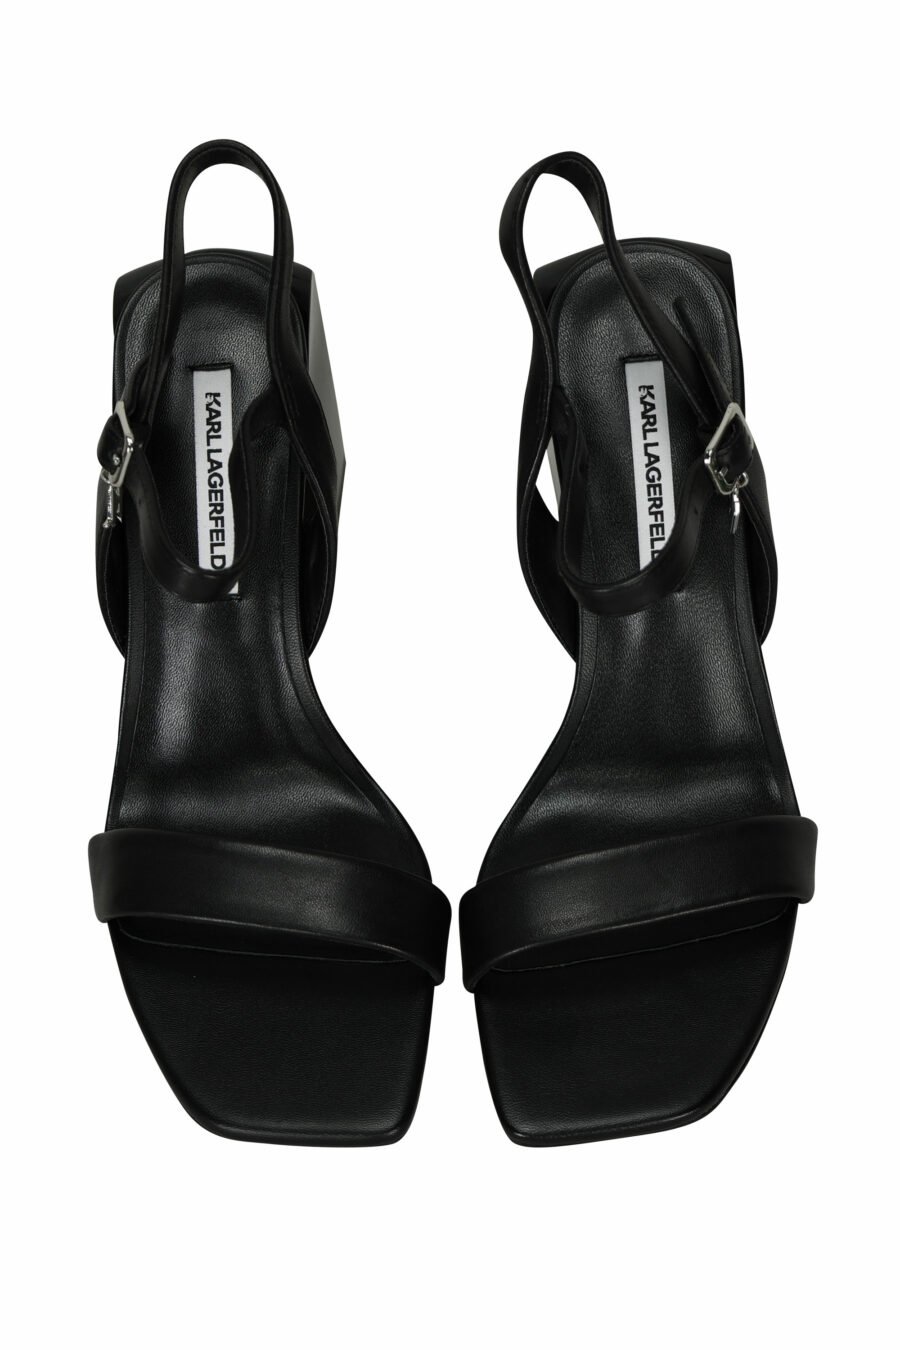 Sandales noires à talon et mini-logo en breloques - 5059529390289 4